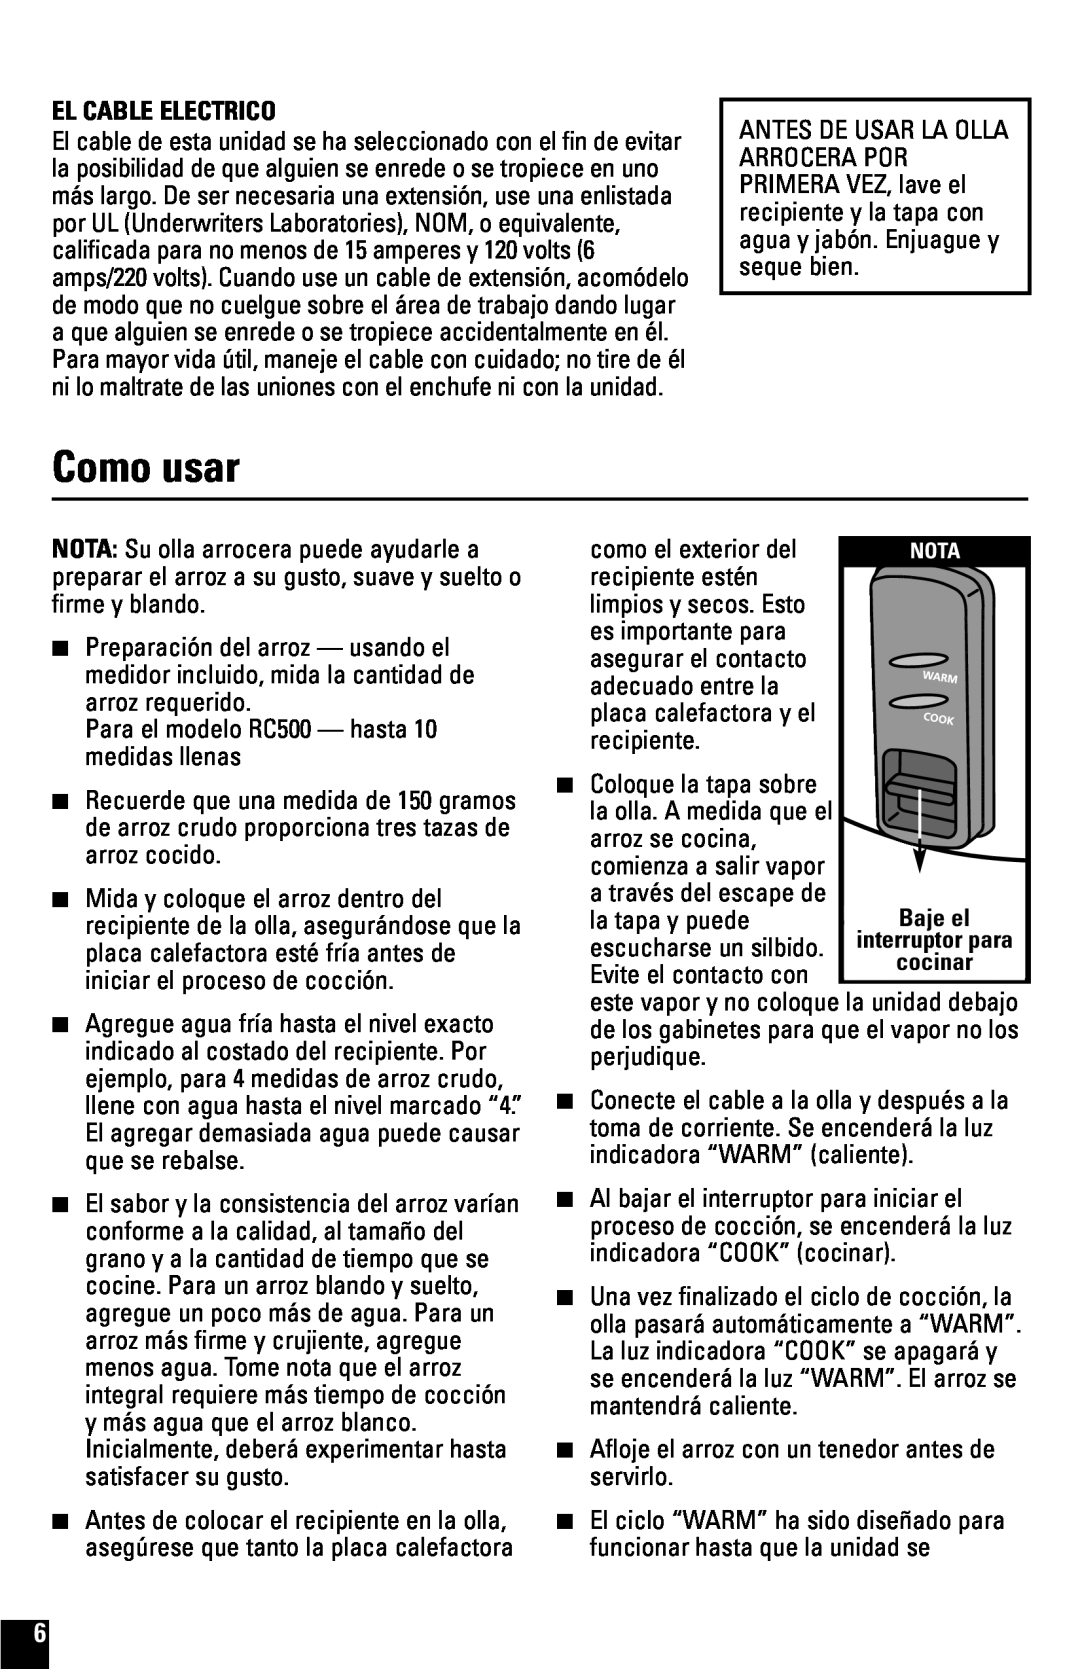 Black & Decker RC600 manual Como usar, El Cable Electrico 